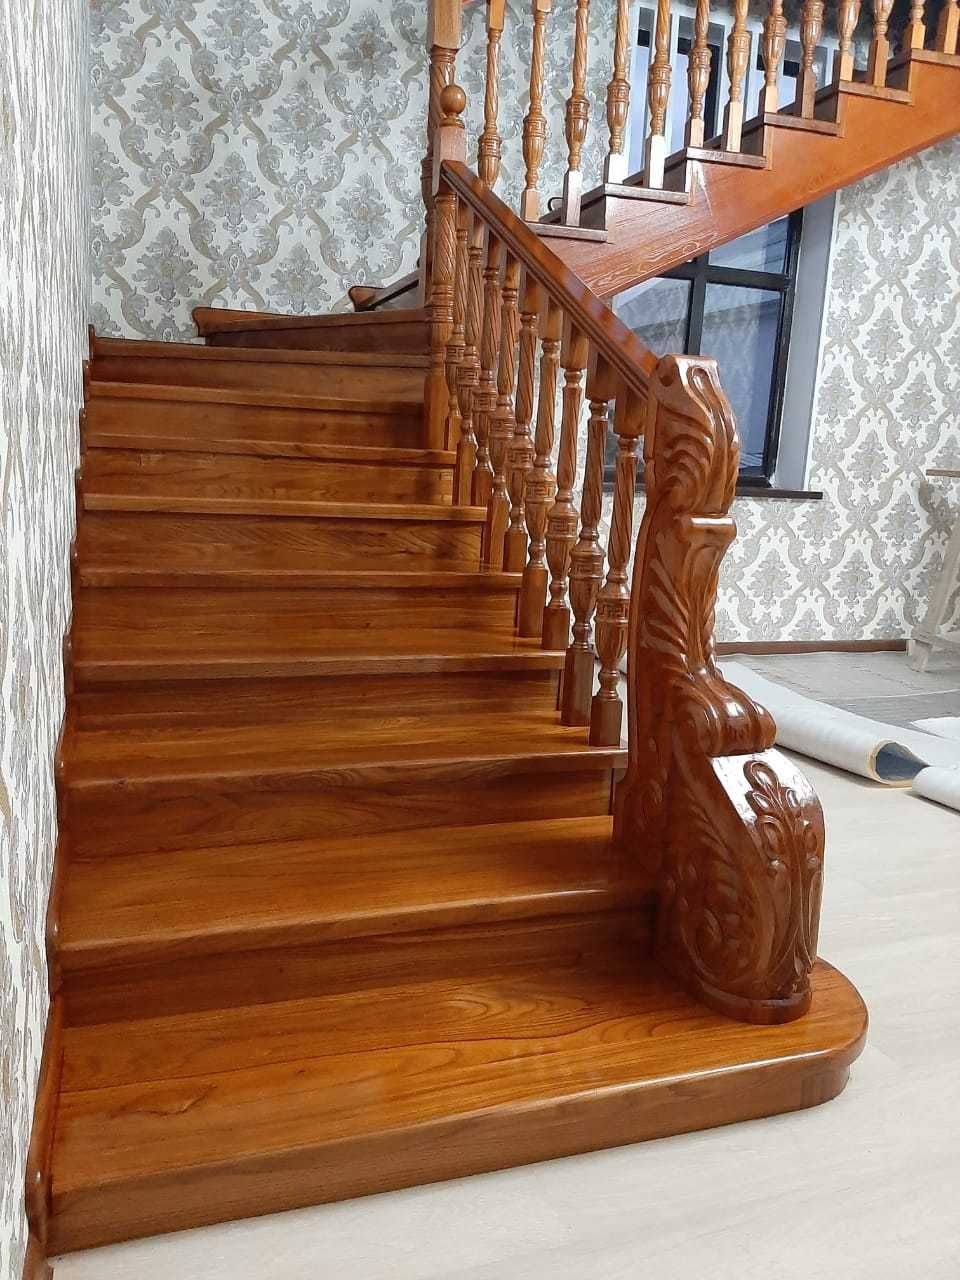 Изготовление, монтаж лестницы из хороших сортов древесины, с гарантией